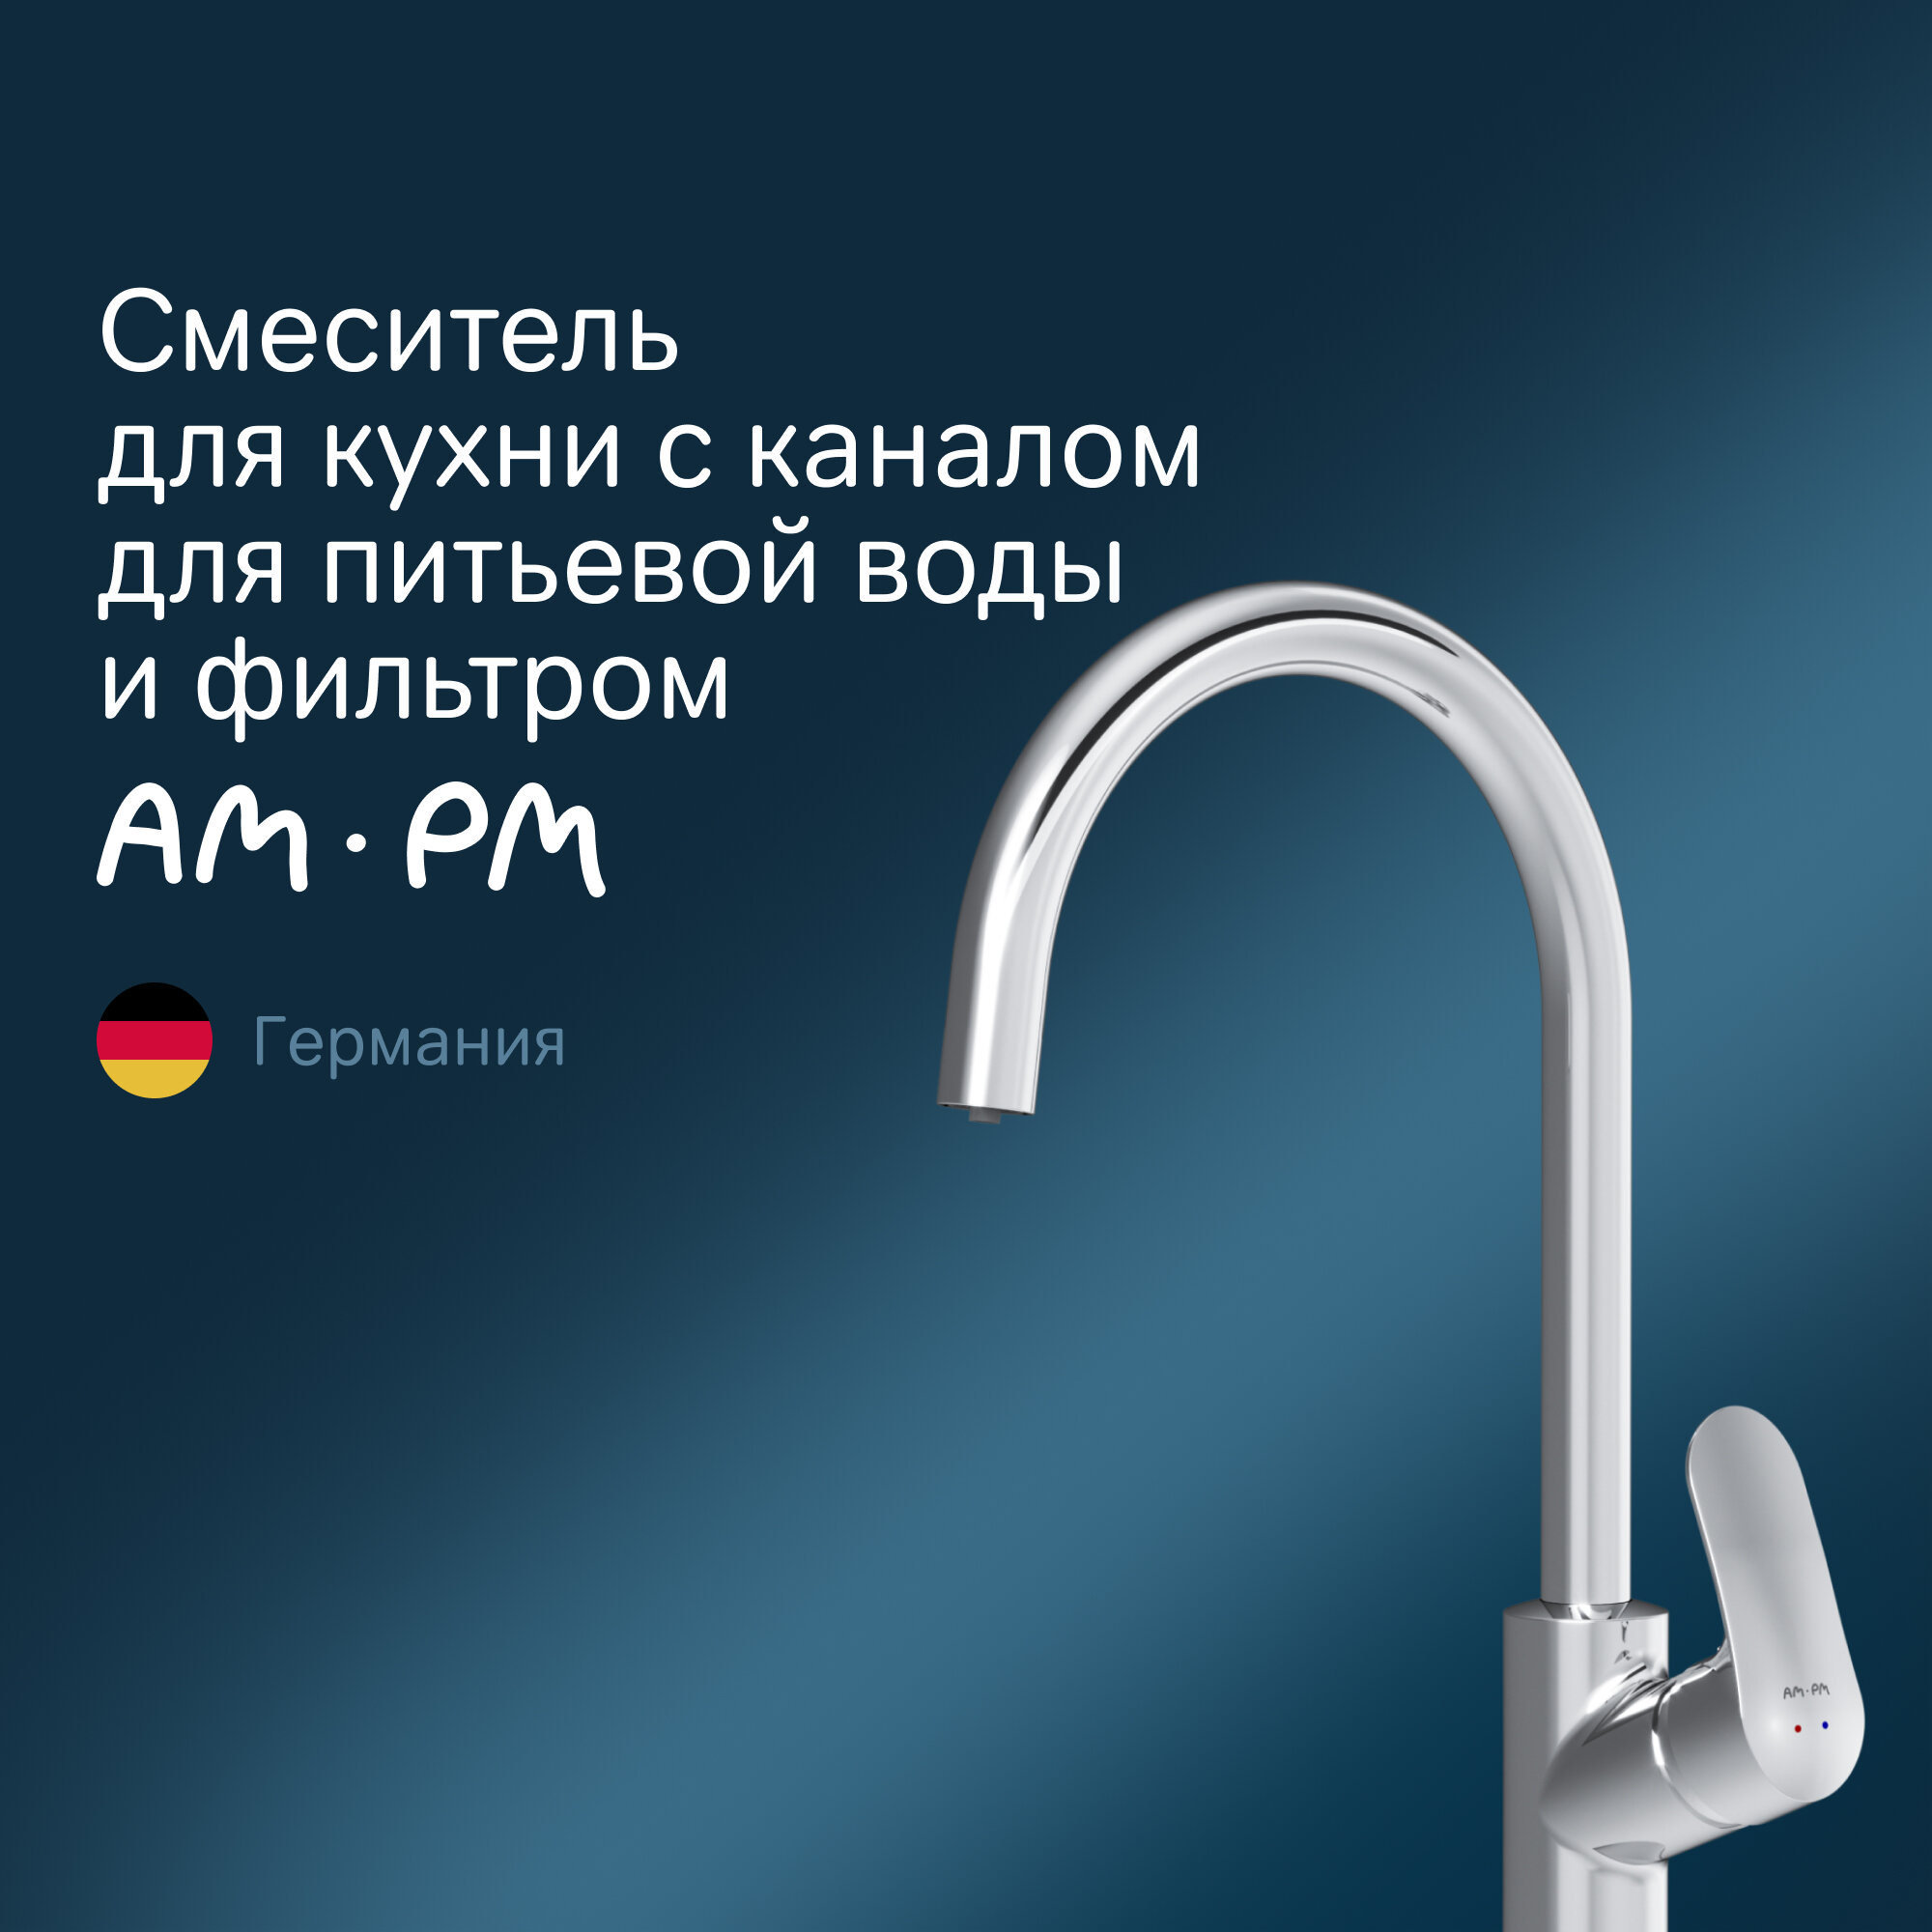 Комплект для кухни (мойки) AM.PM Like F8007S00 смеситель для кухни с каналом для питьевой воды + фильтр Барьер Эксперт Slim Классик